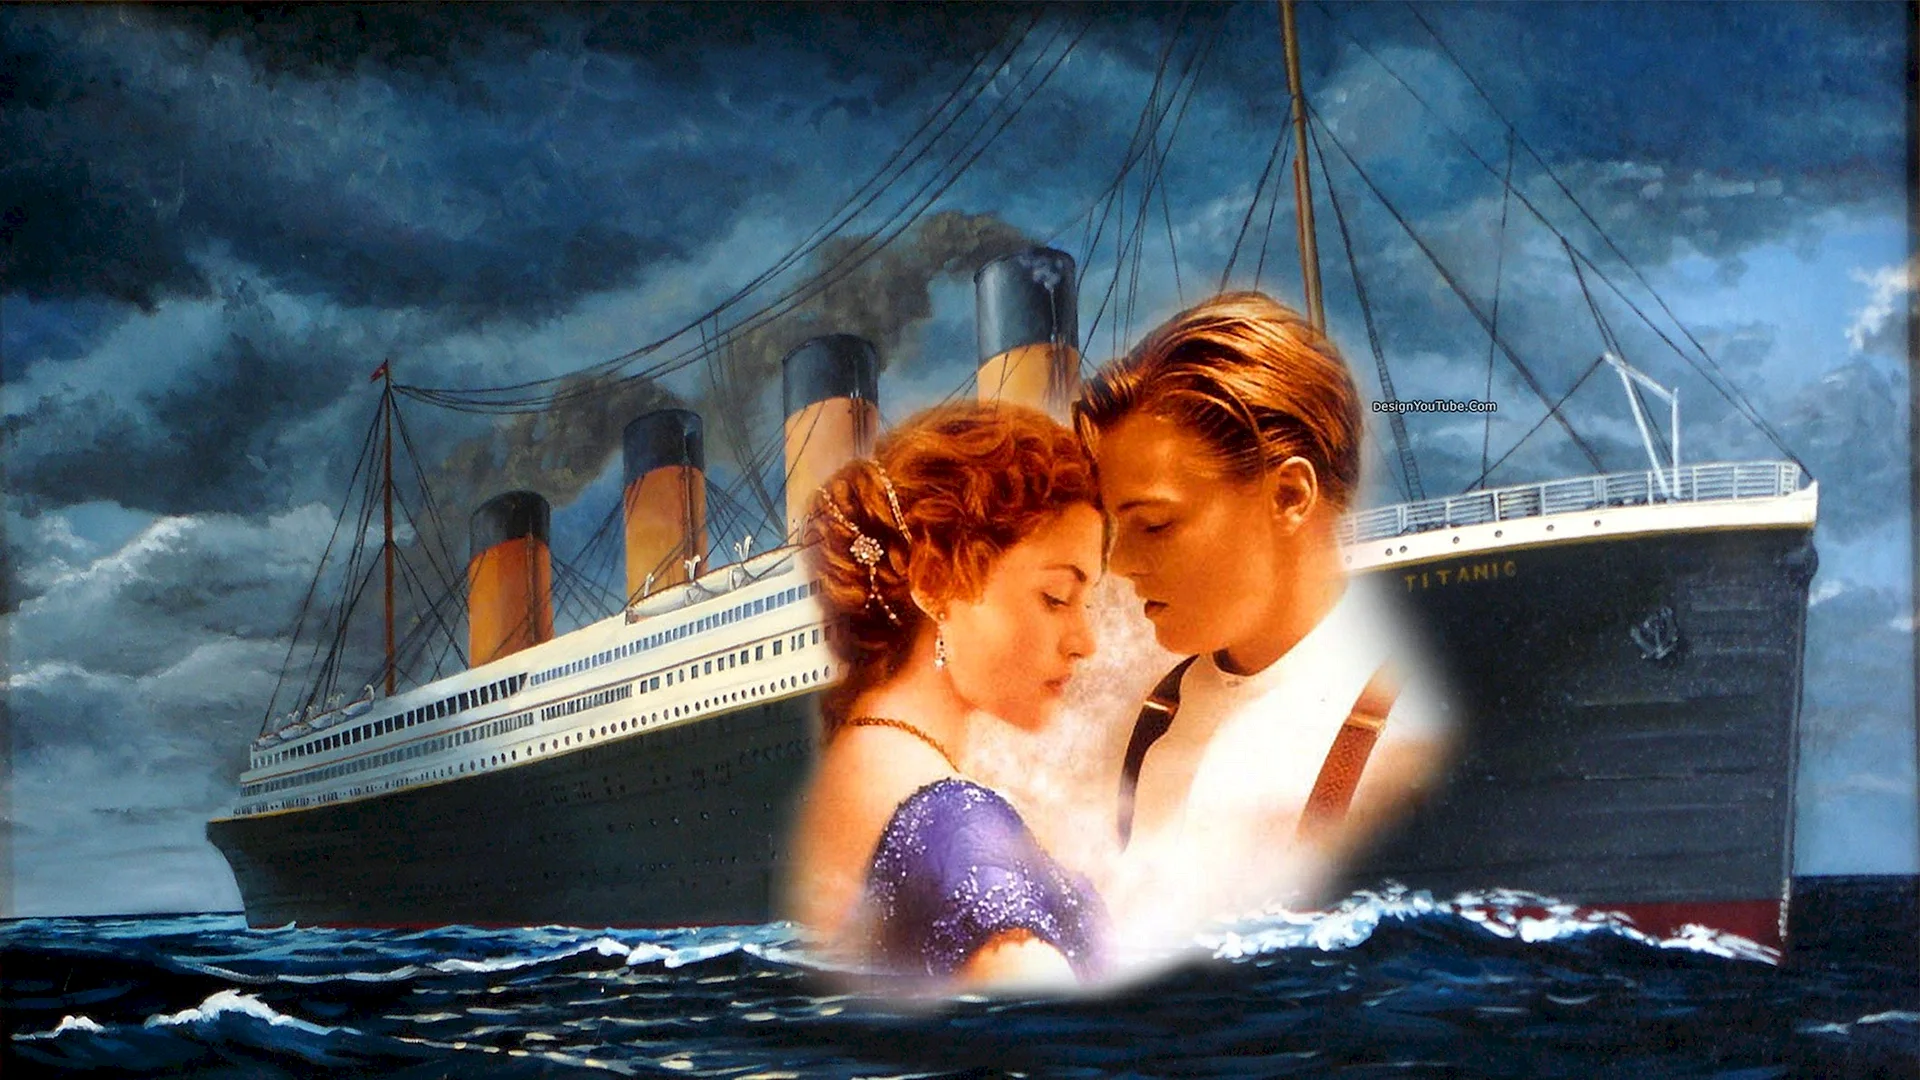 Титаник фильм 1997 тонет